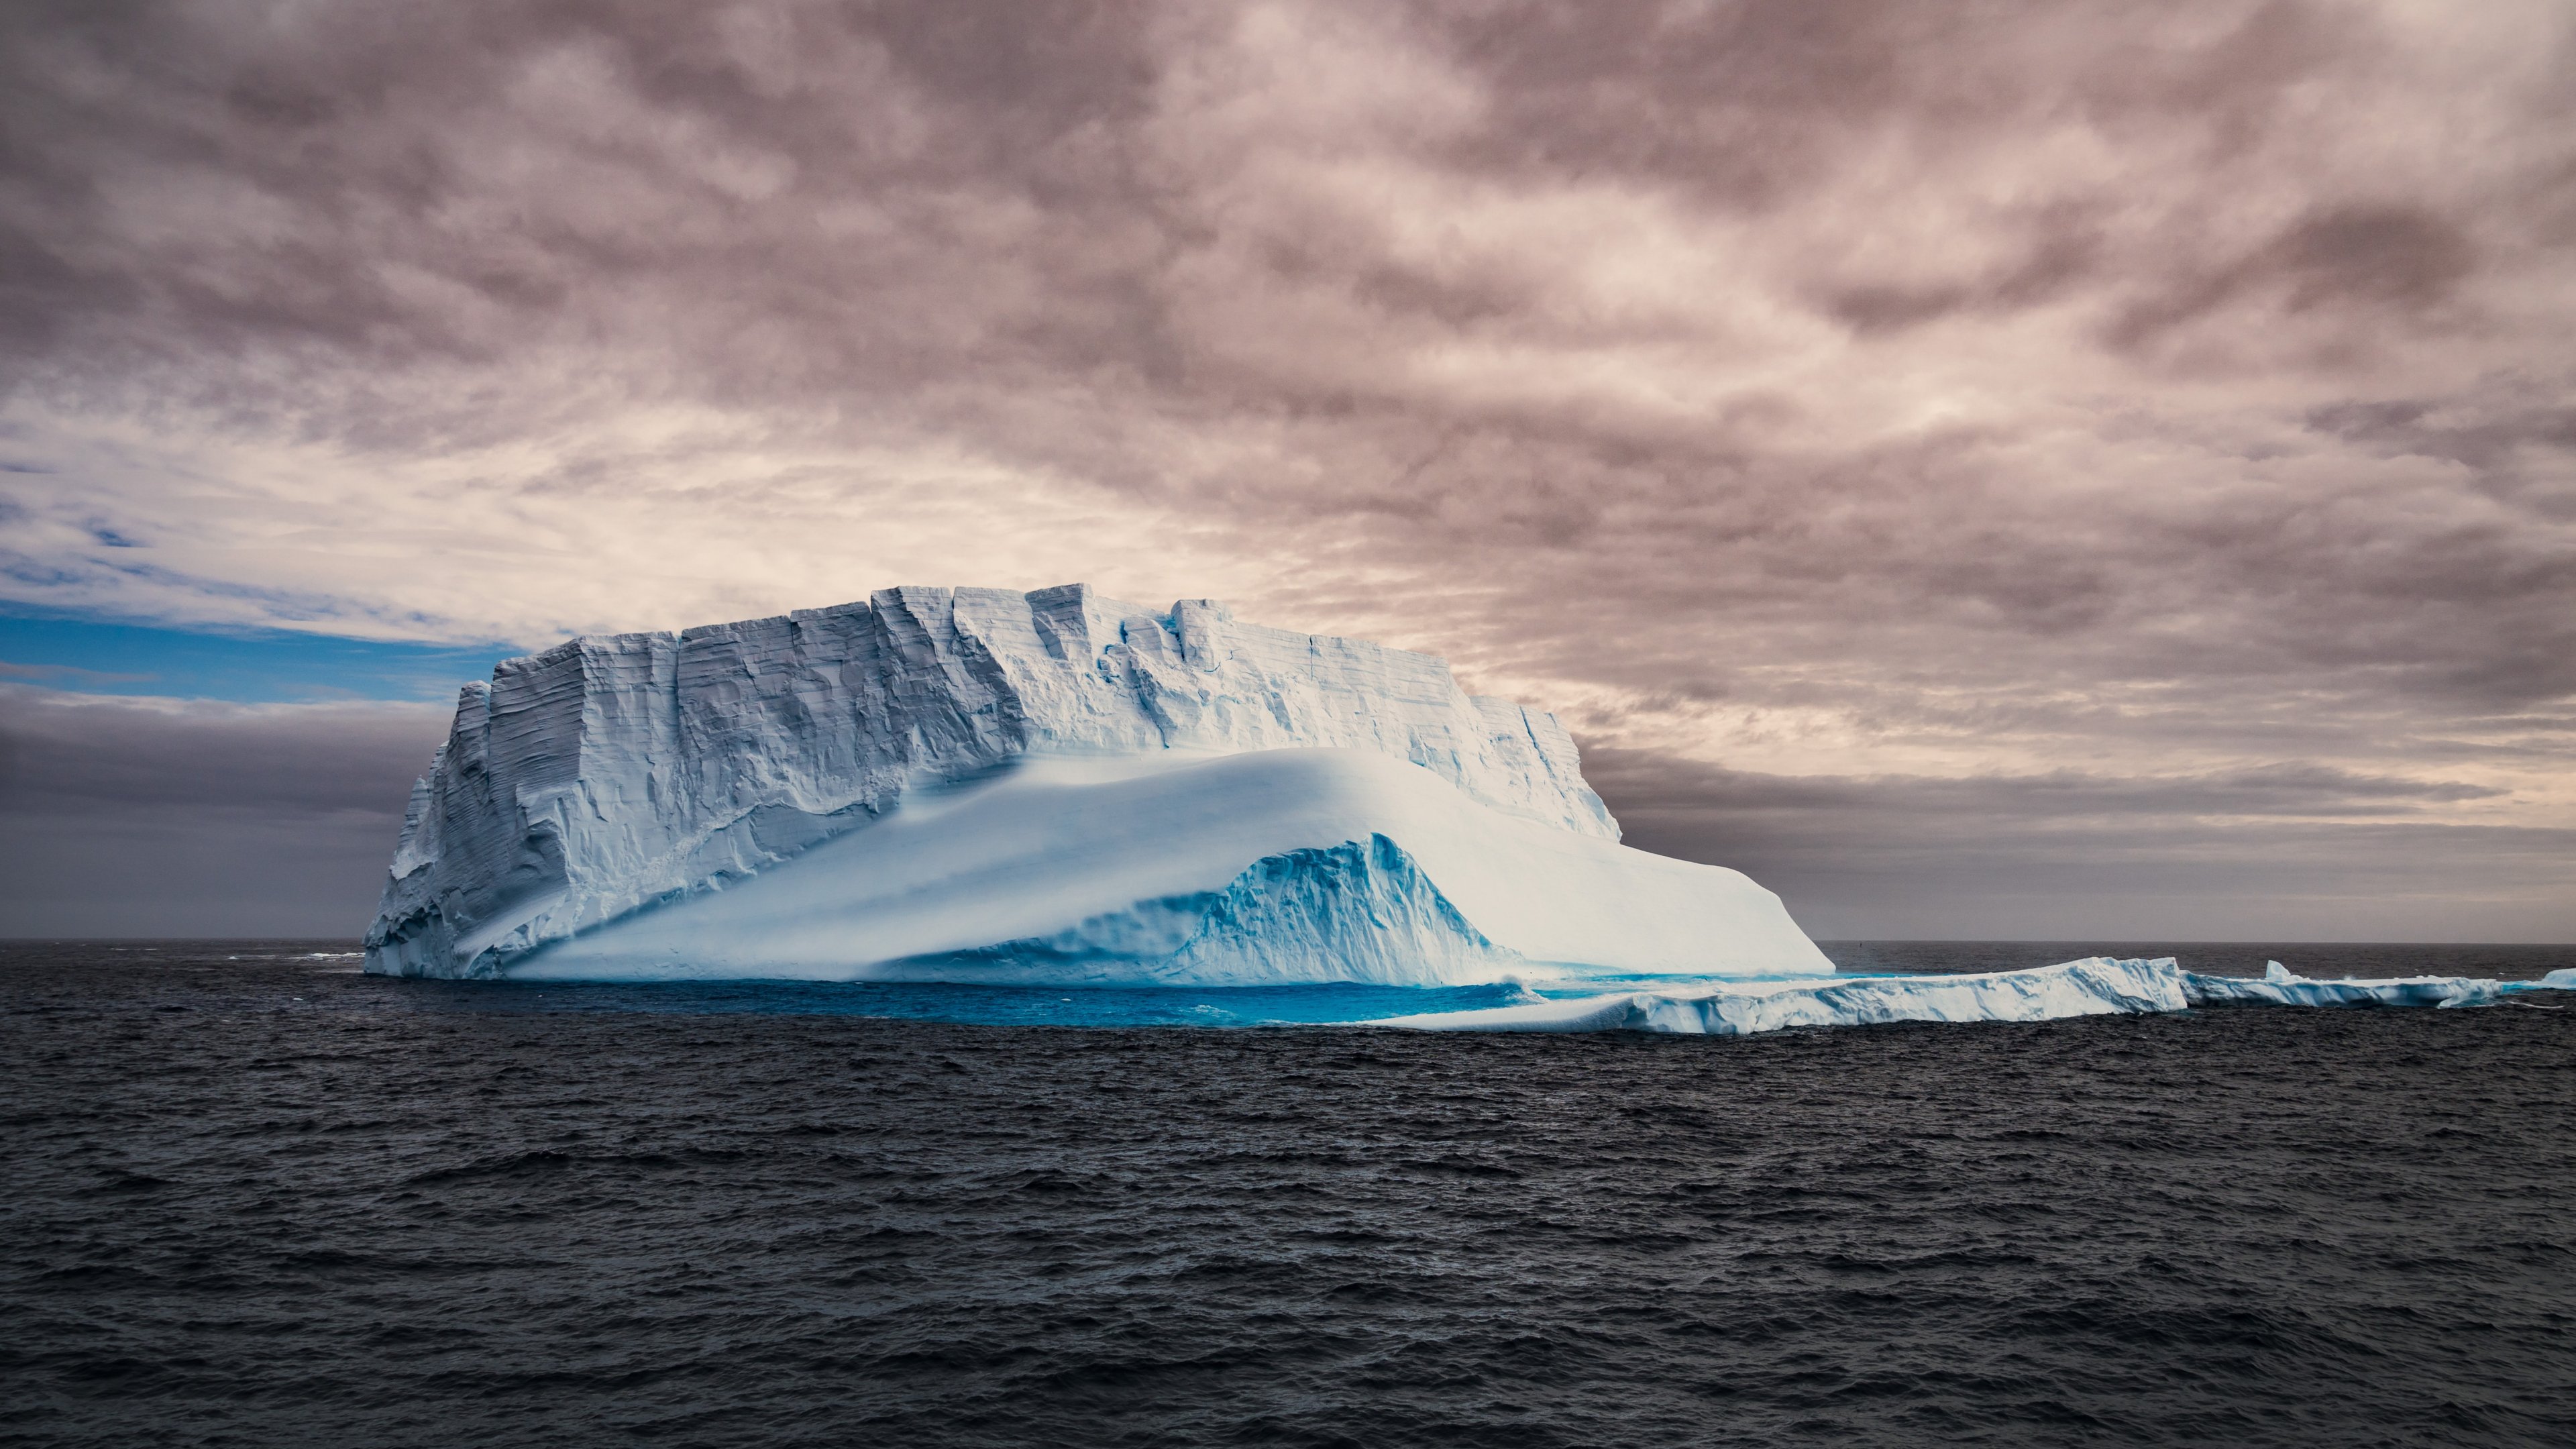 Антарктика Атлантический океан. Айсберг фон. Антарктида 2022. Обои на рабочий стол Антарктида. Айсберг в океане текст